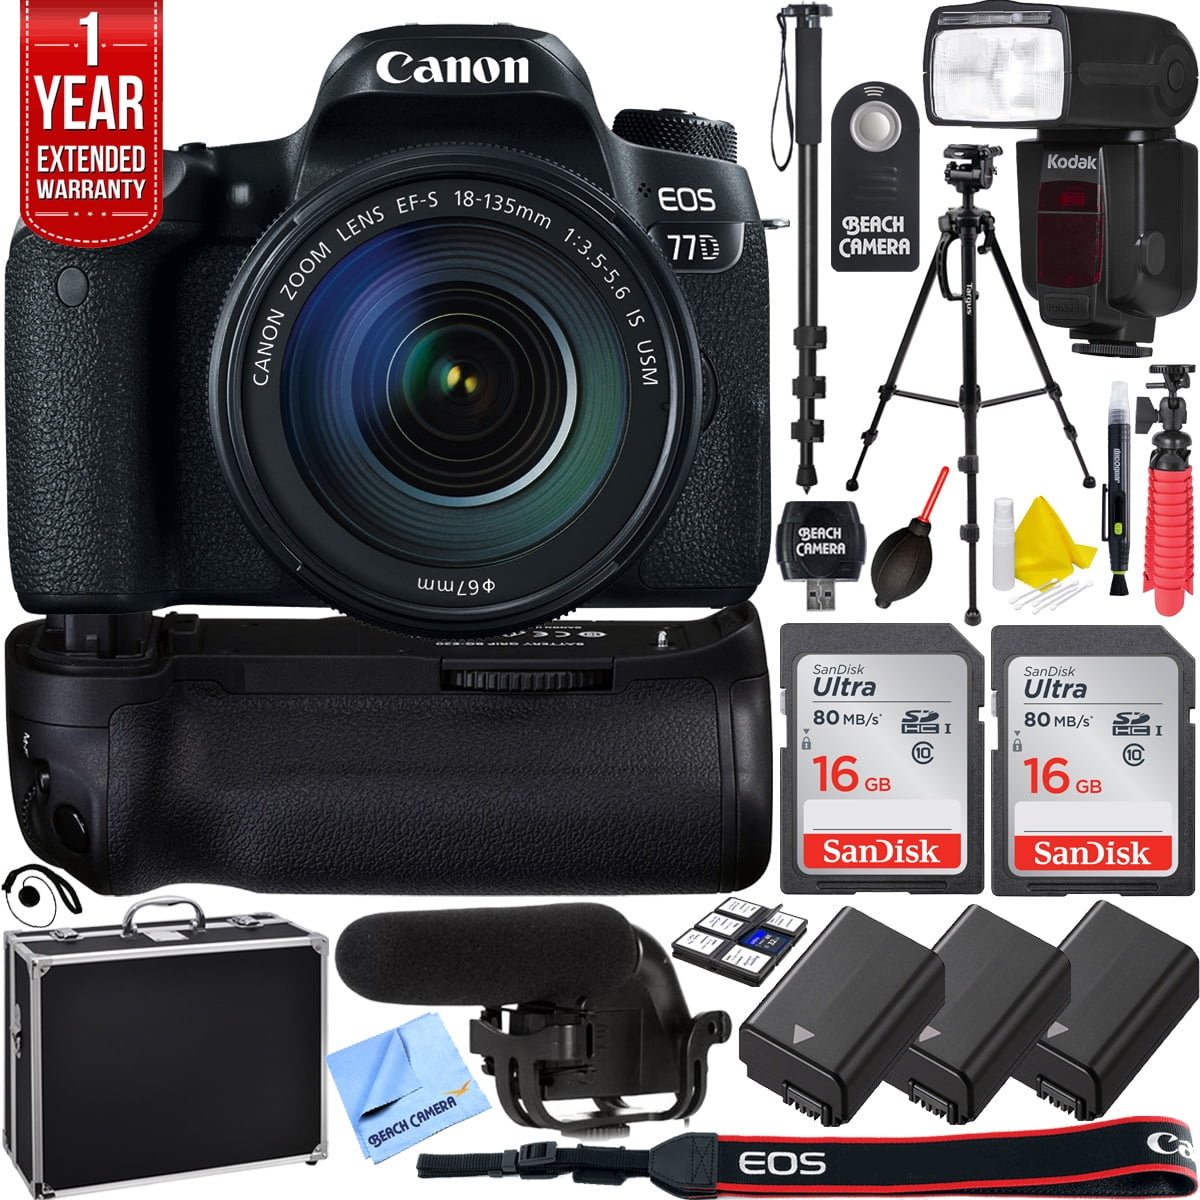 Canon EOS 77D 24.2 MP CMOS (APS-C) DSLR Camera w/ EF-S 18-135mm Lens Battery & Battery Grip Complete Video Recording Bundle 2018 Beach 24 Piece Value Bundle -